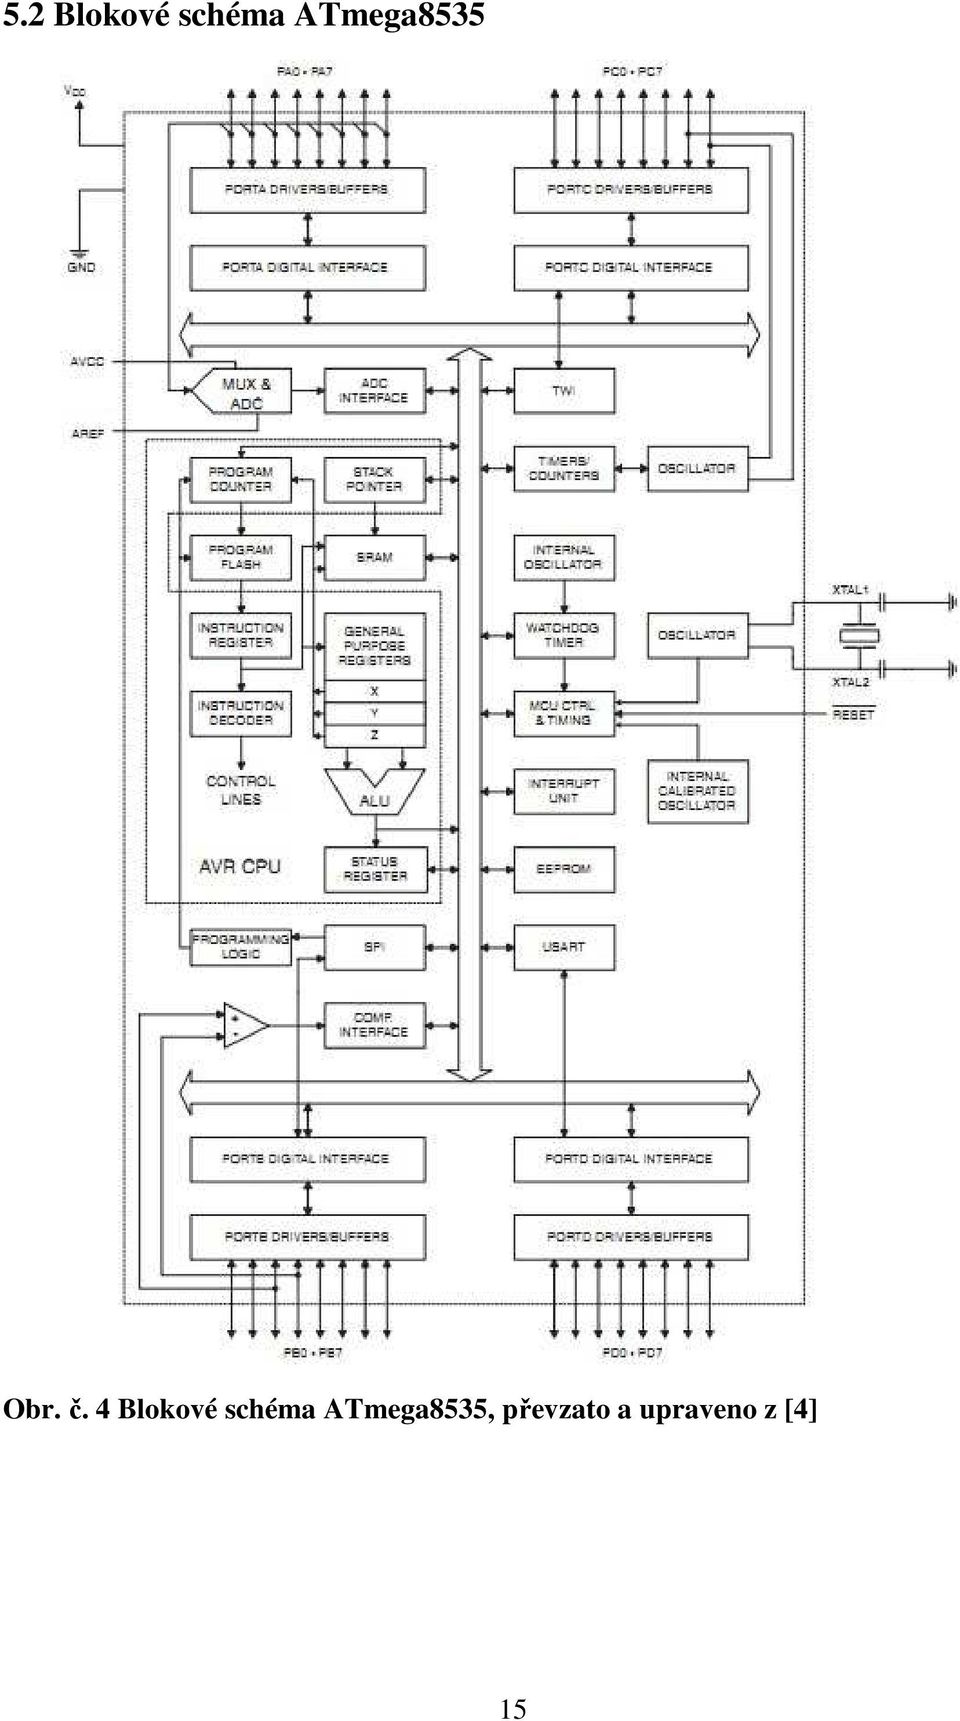 Výuková sestava pro práci s mikrokontroléry AVR Atmel - PDF Stažení zdarma